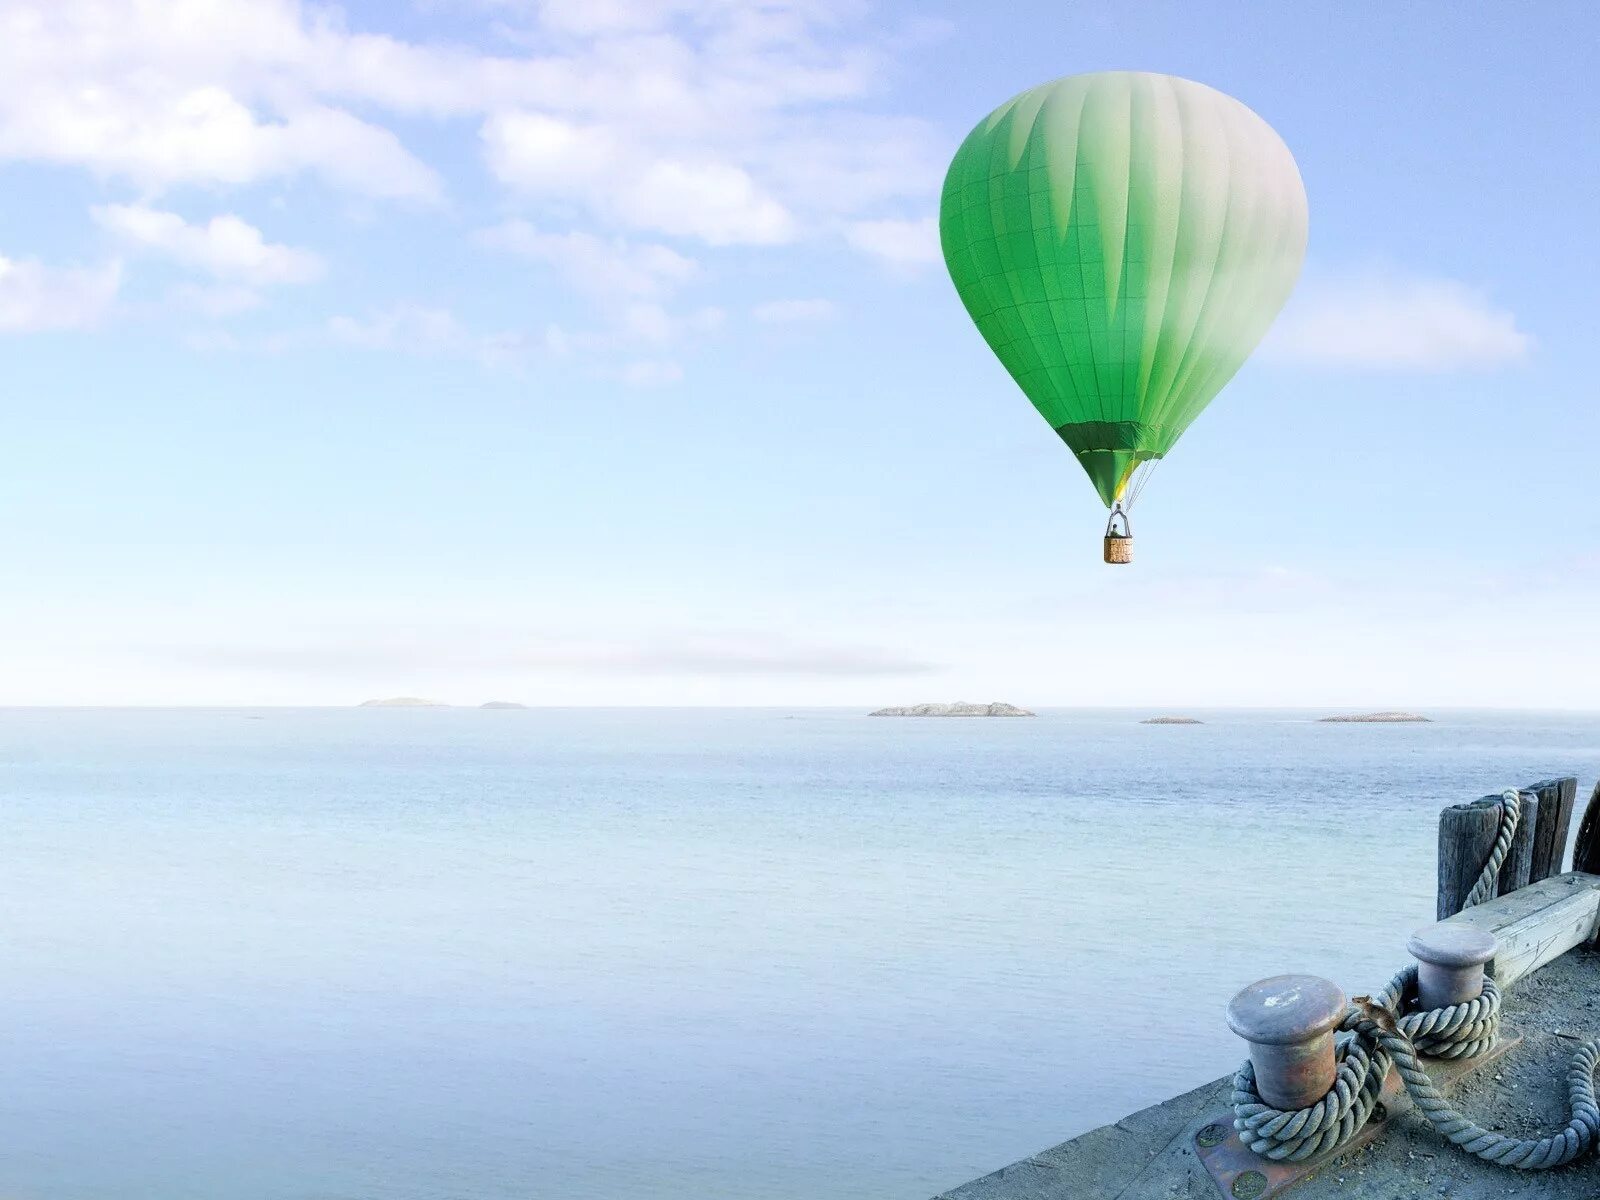 Самолет на воздушном шаре. Воздушный шар. Vozdushnyye shar. Воздушные шары в небе. Воздушный шар над морем.